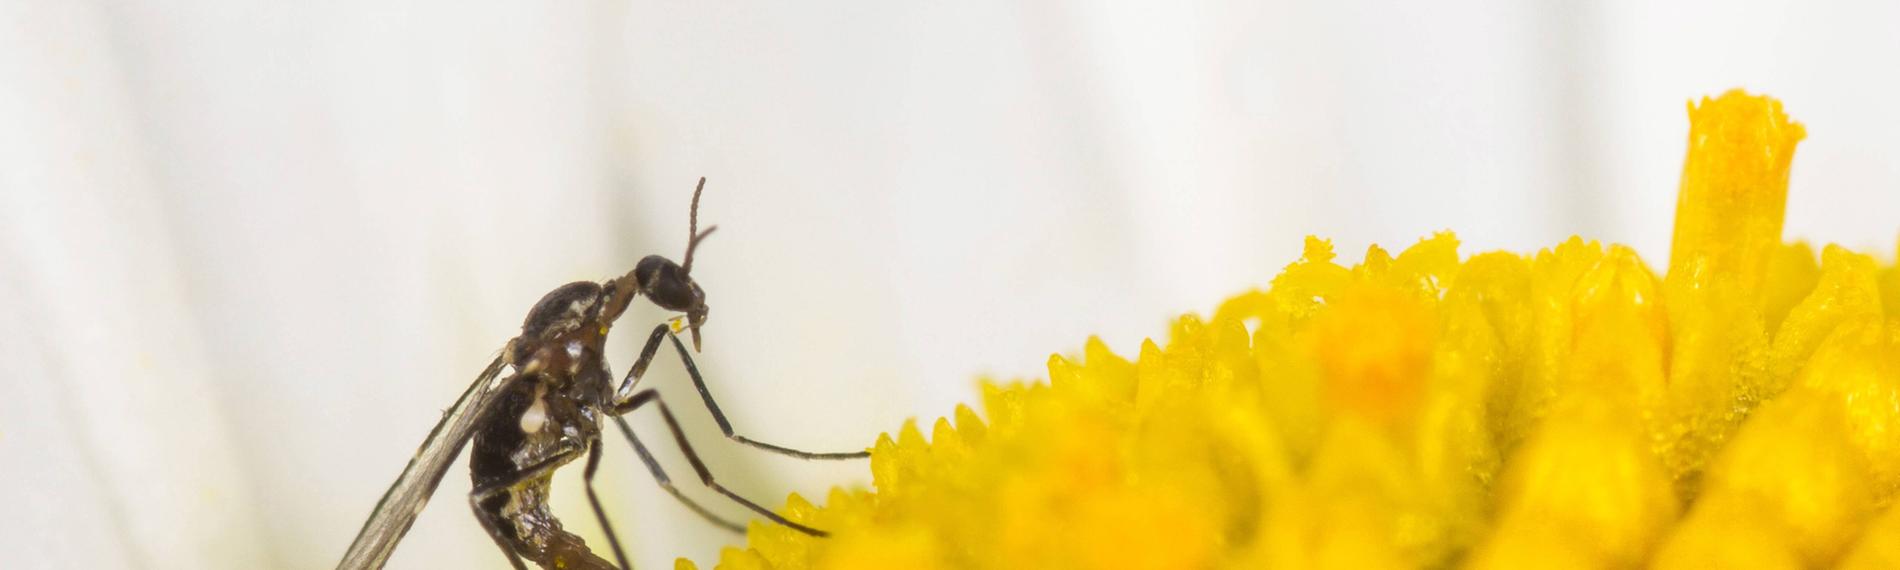 Archiv:Archiv: Trauermücke (Bradysia spec.), Weibchen bei der Eiablage auf der Blüte einer Magerwiesen-Margerite am 21.05.2014